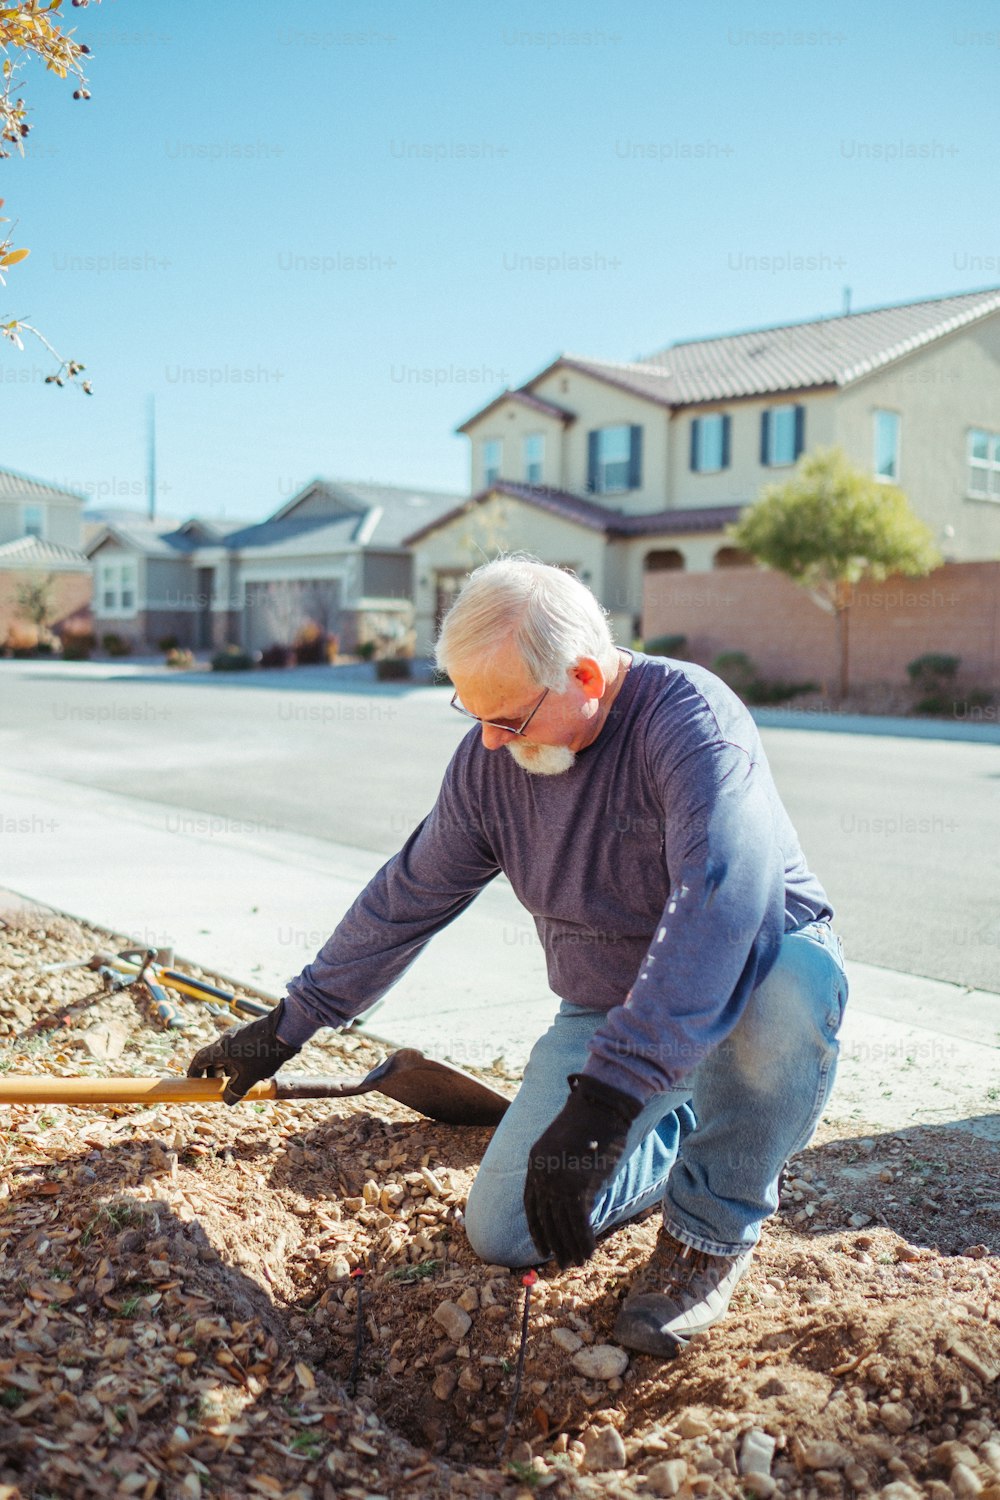 Un hombre está cavando un hoyo en el suelo